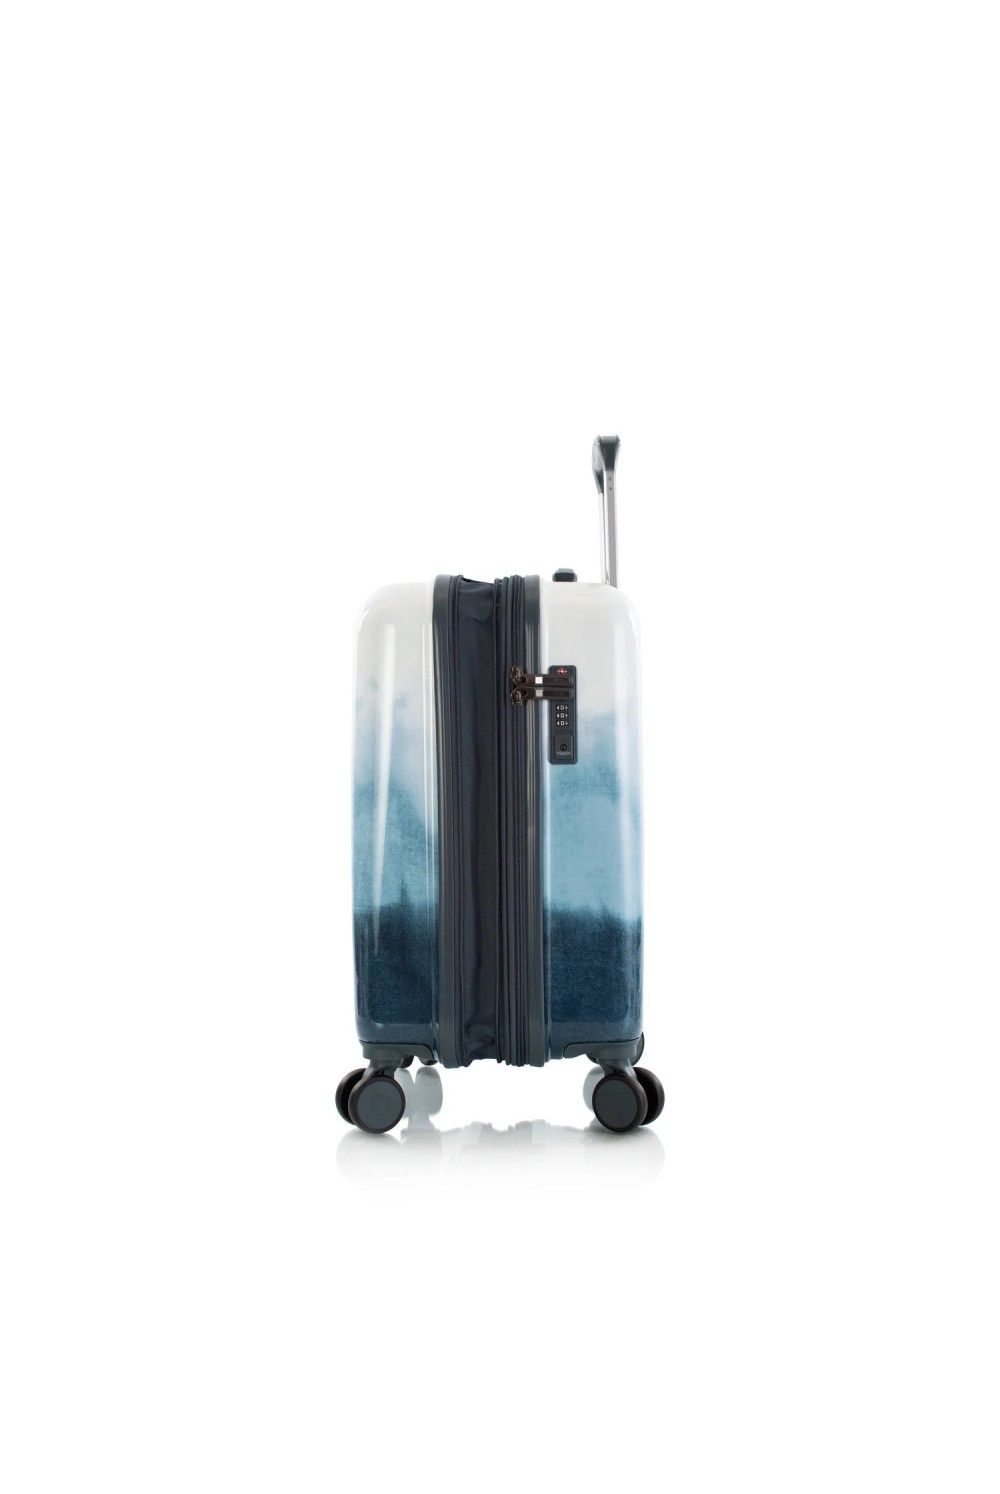 erweiterbar 4 Handgepäck Rad Blue Heys Fashion Koffer 55cm